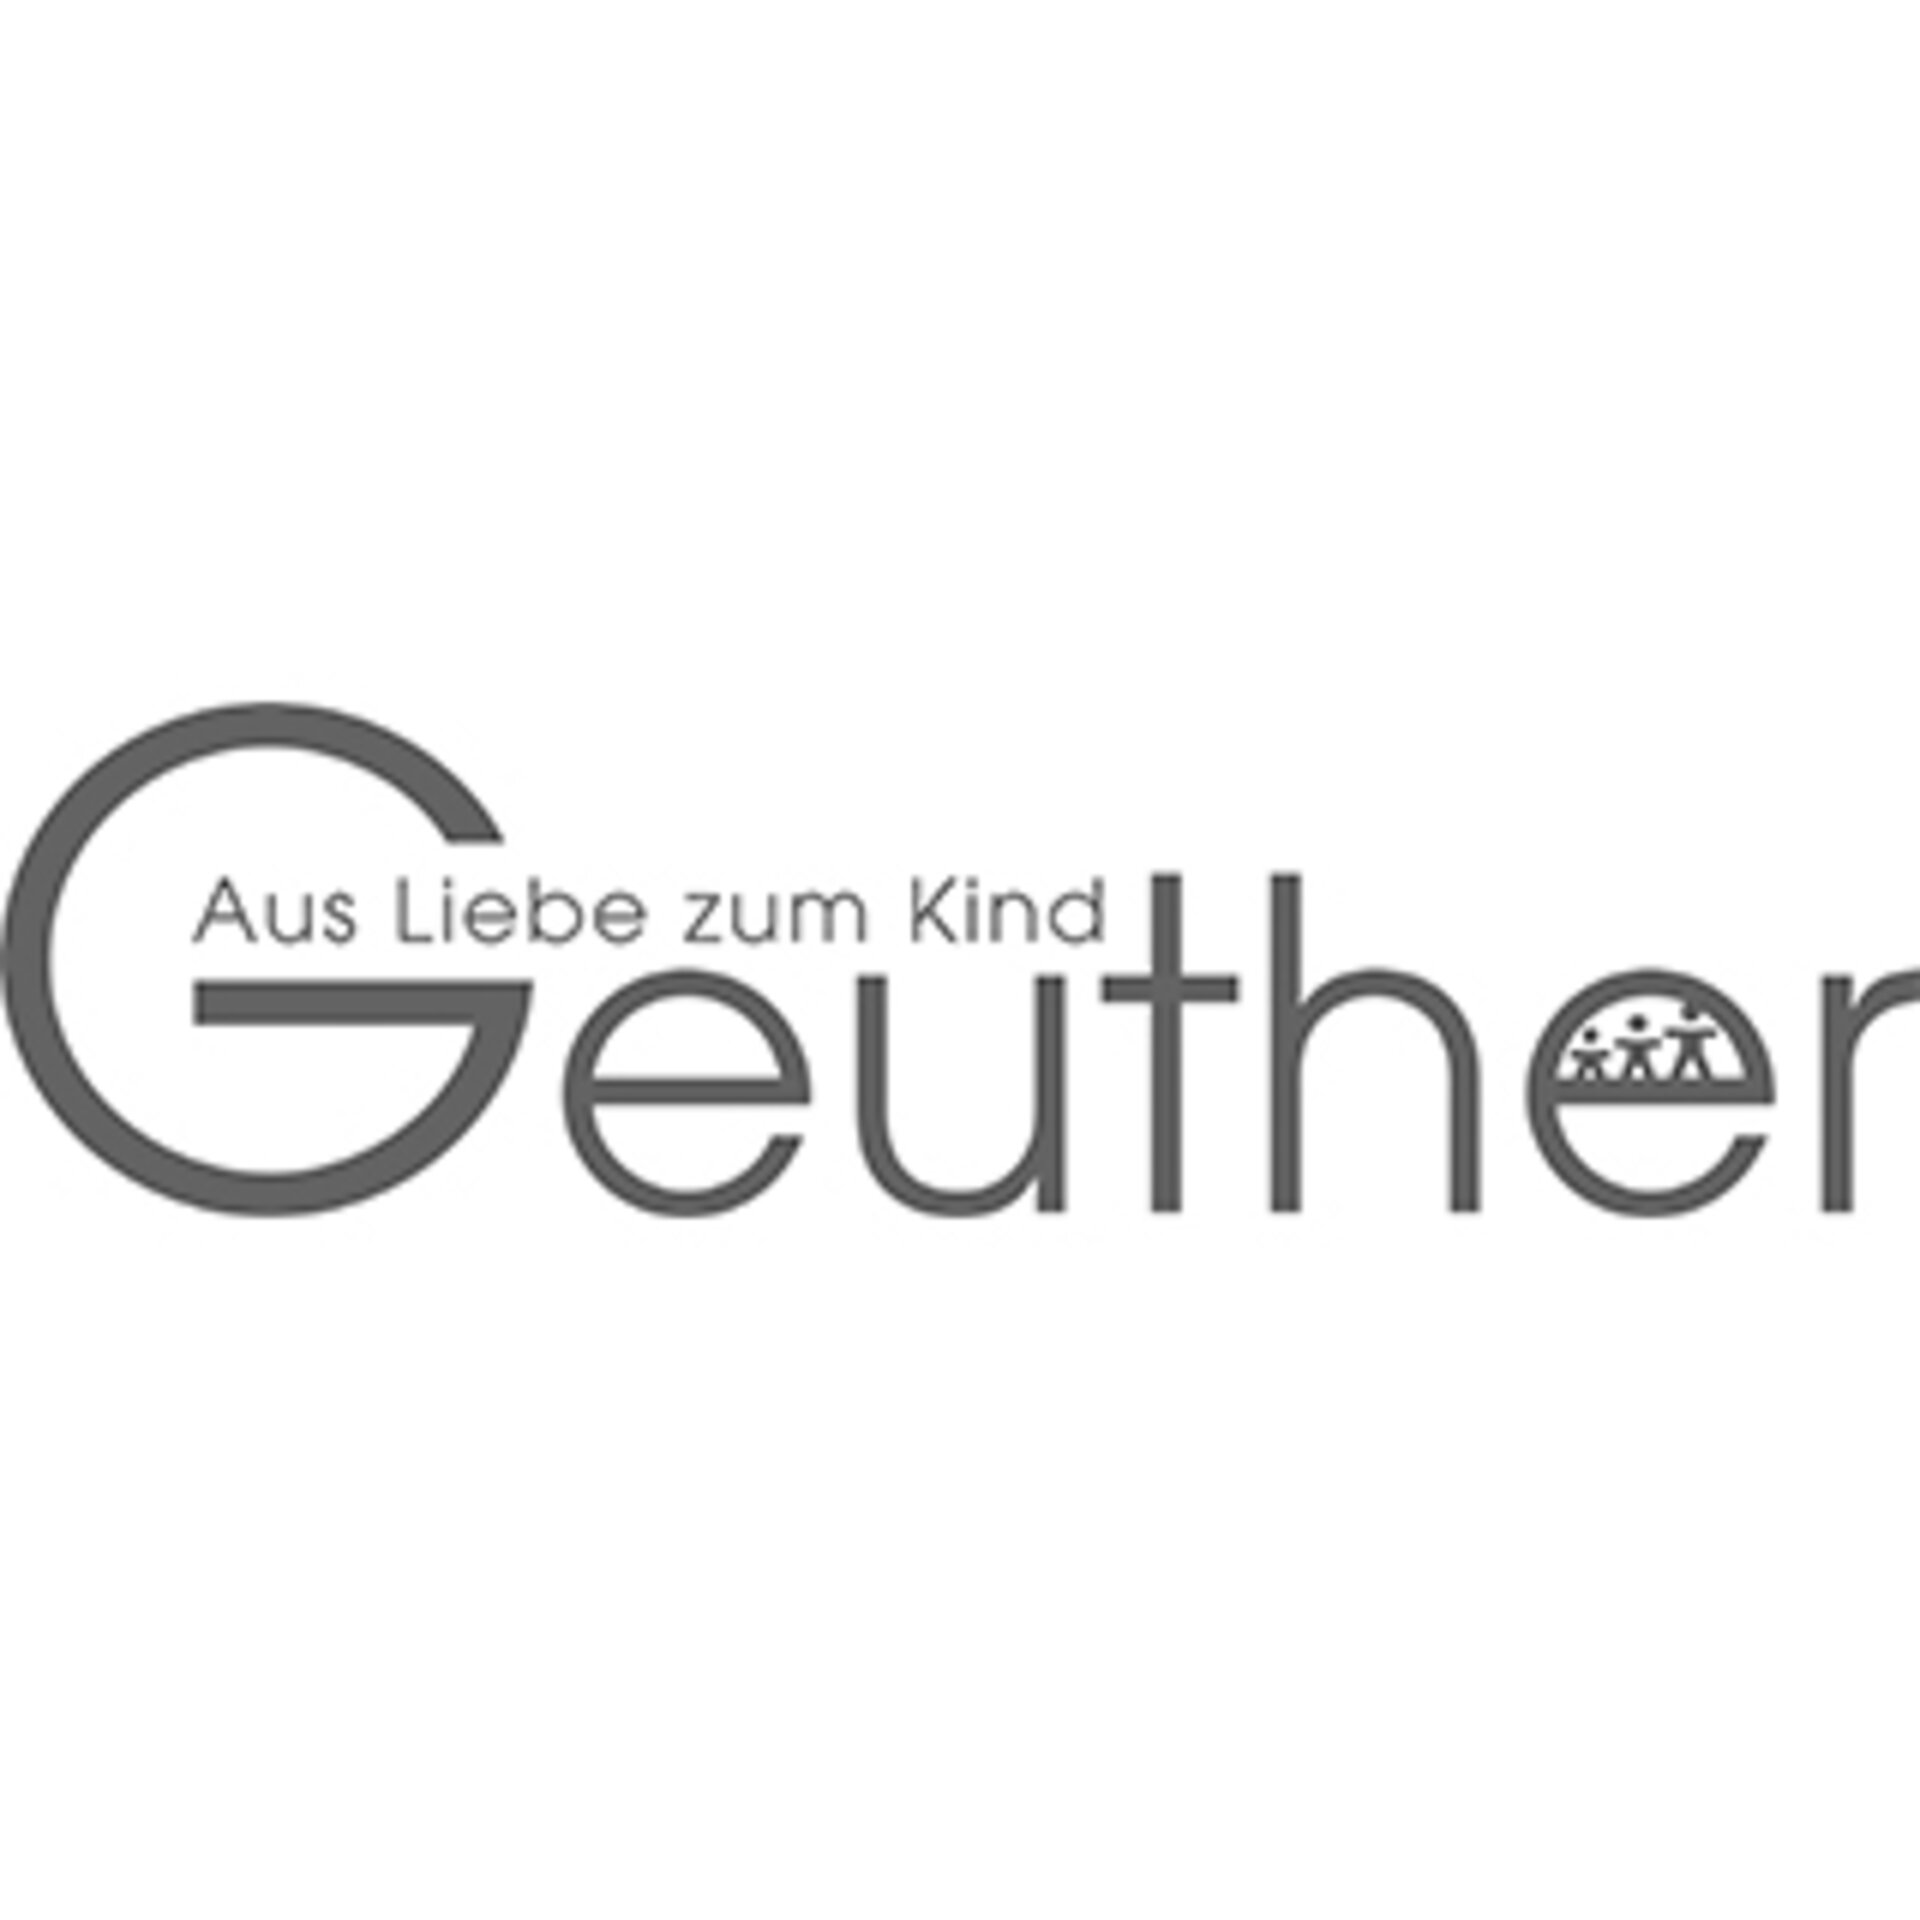 "Geuther - Aus Liebe zum Kind" Logo